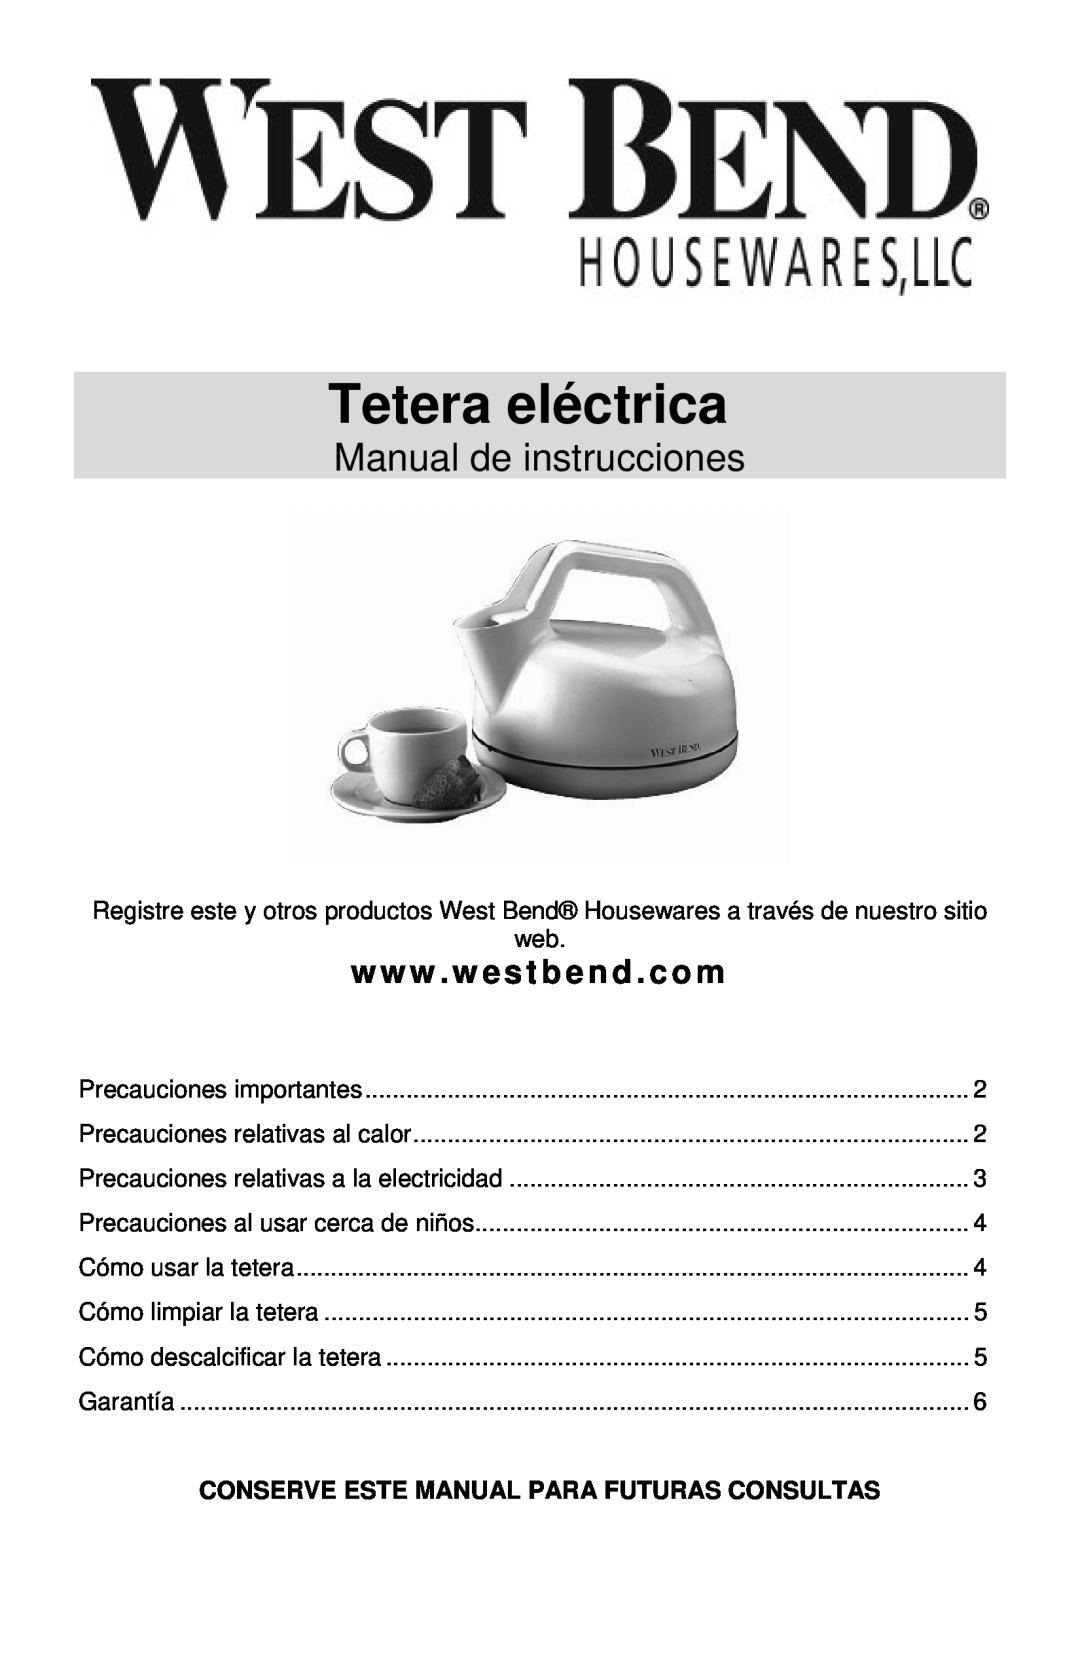 West Bend 6400 instruction manual Tetera eléctrica, Manual de instrucciones, Conserve Este Manual Para Futuras Consultas 